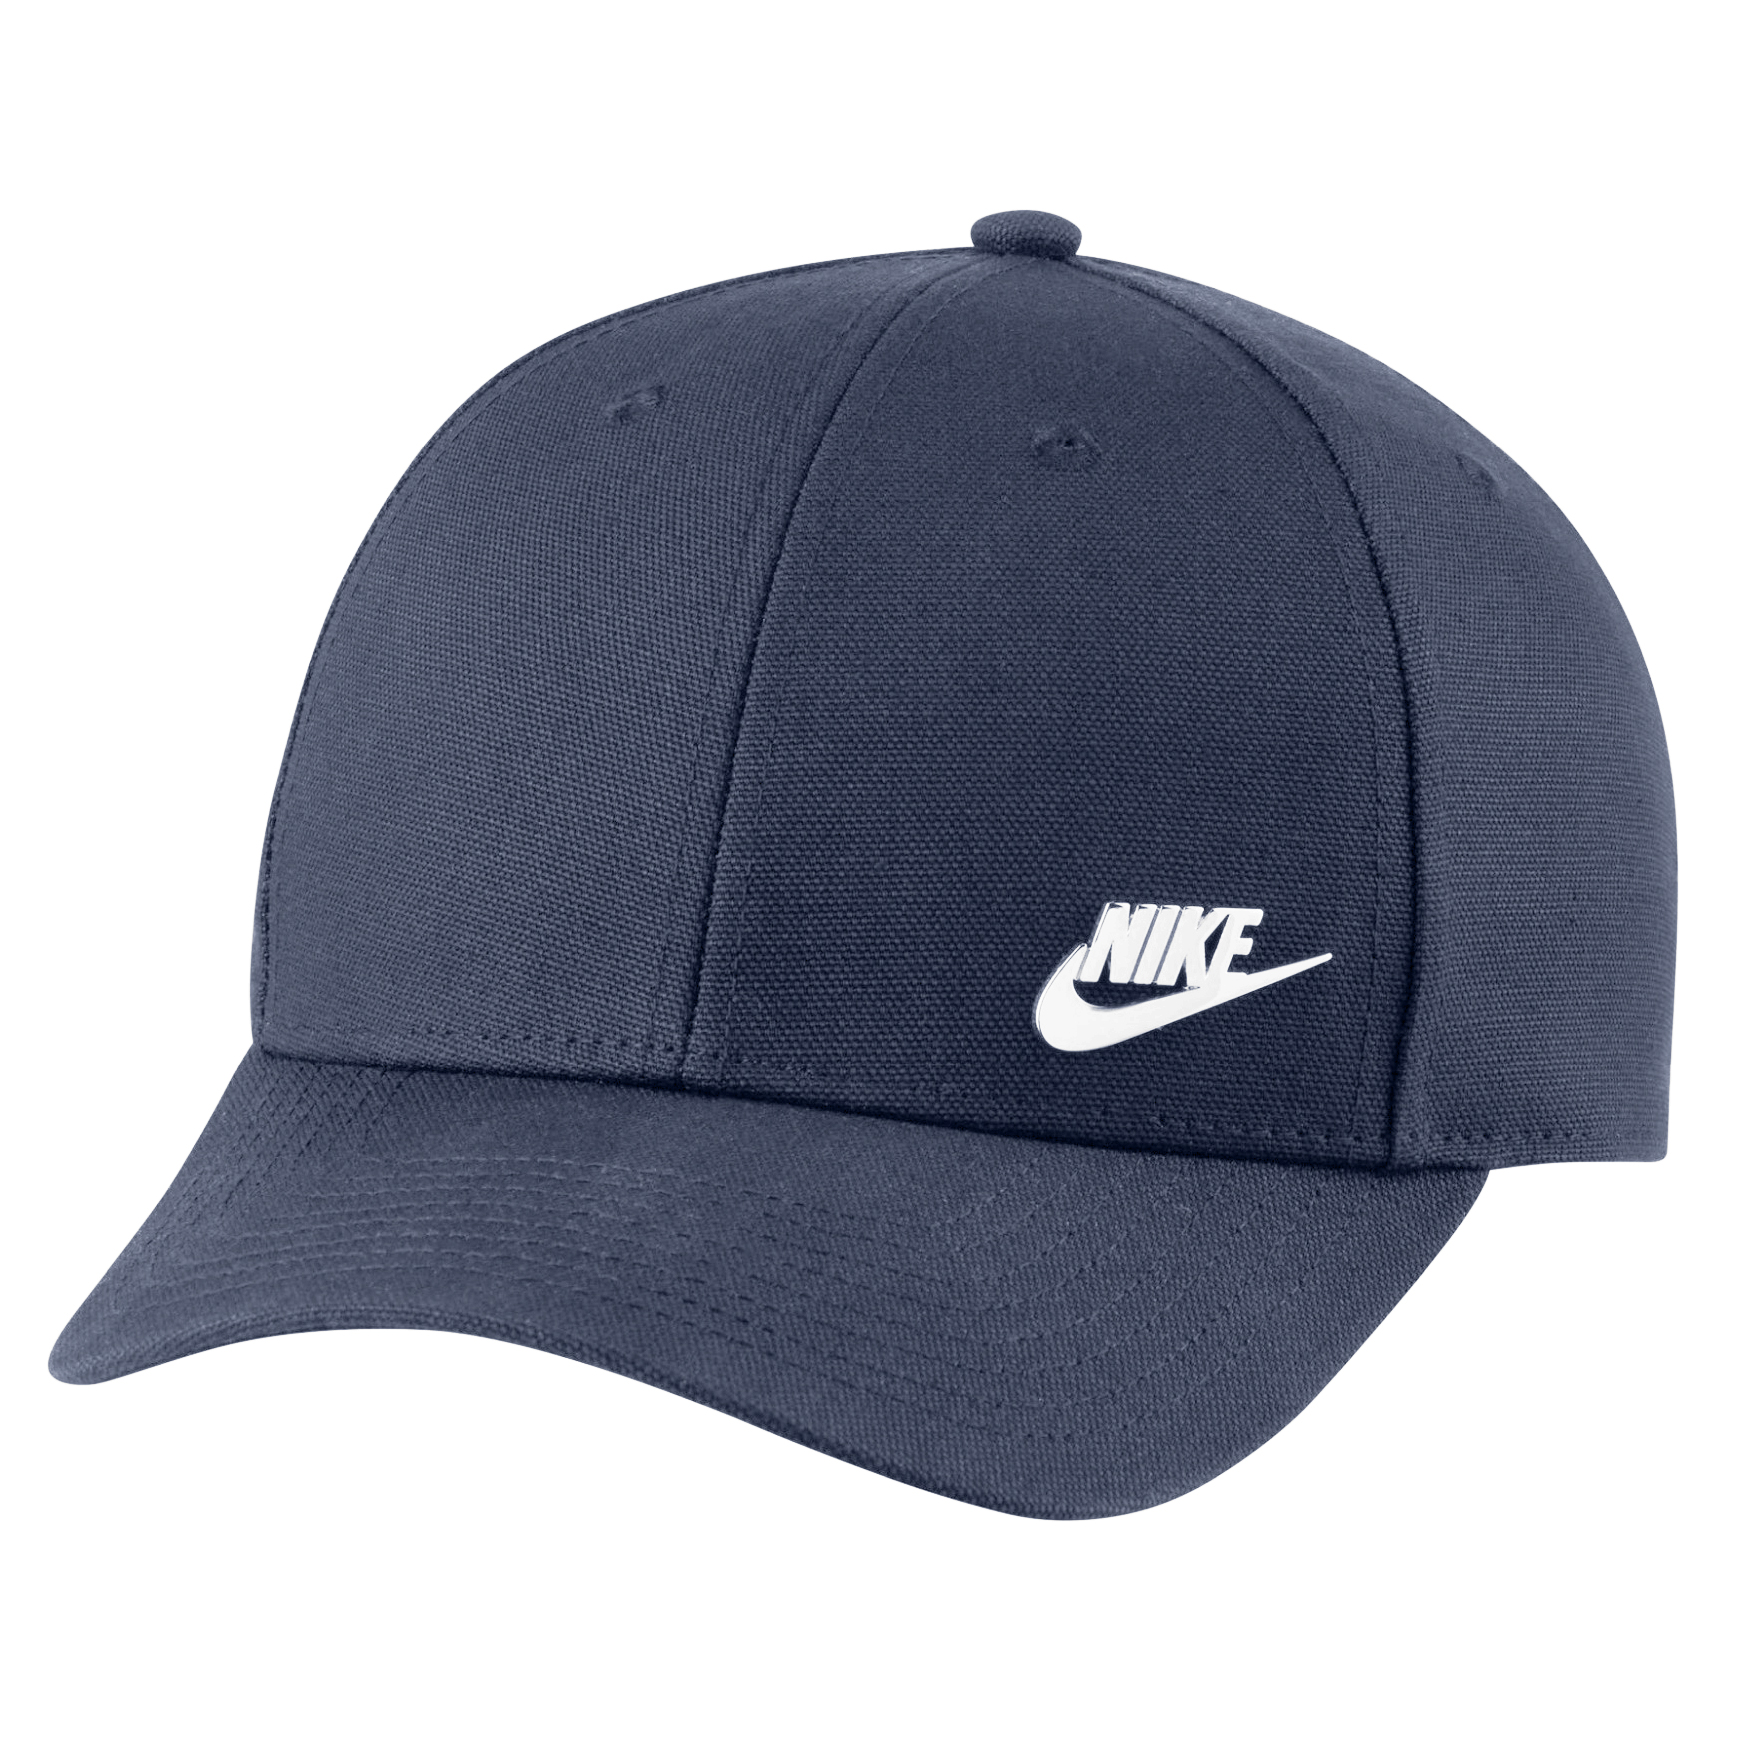 Produktbild von Nike Sportswear Legacy 91 Cap - midnight navy/white DC3988-411